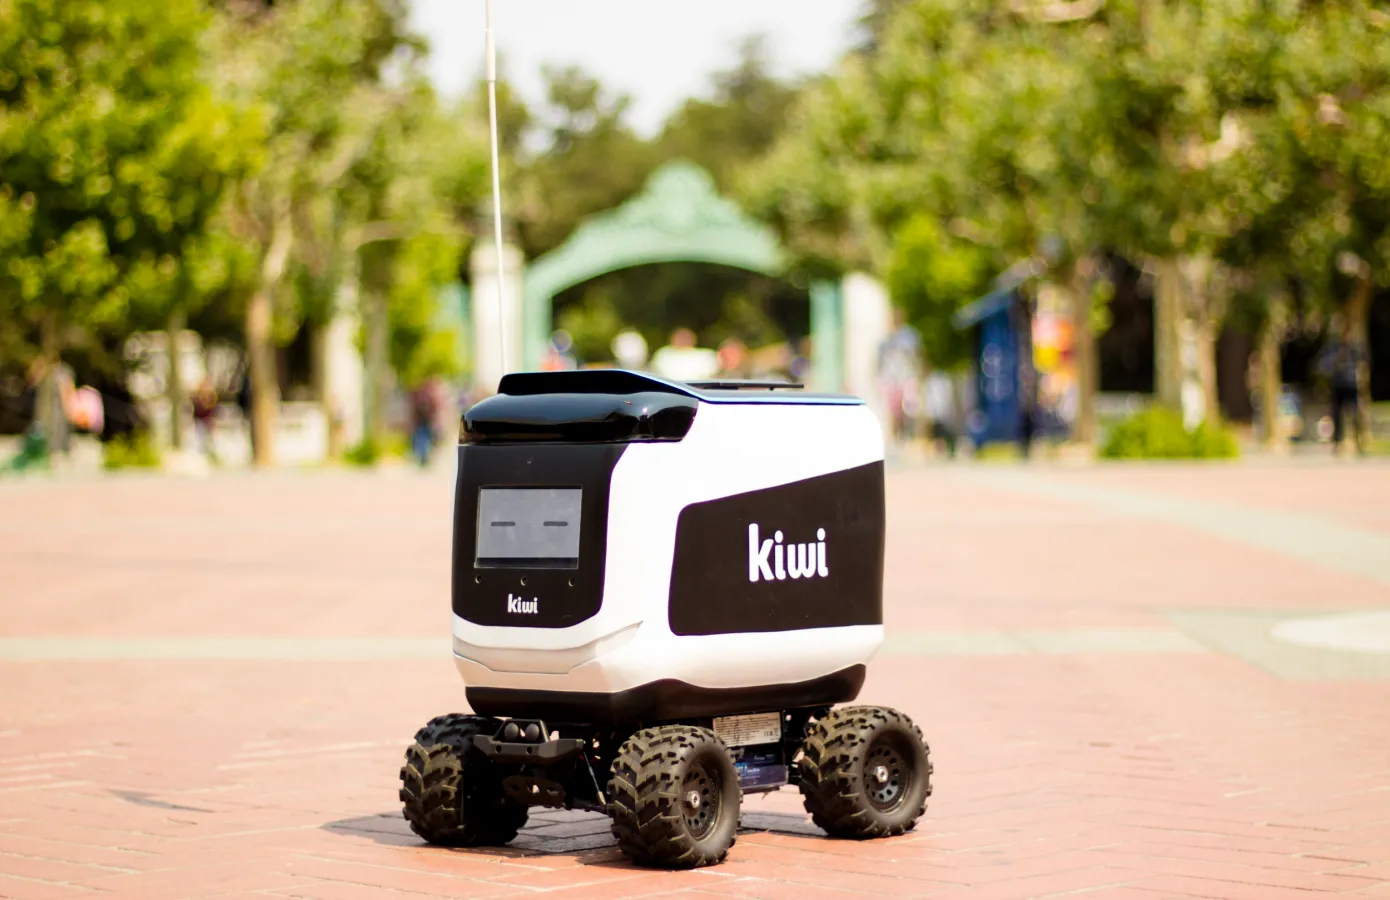 机器人送货公司 Kiwibot 以中美紧张局势为由收购台北芯片制造商-robotdelivery 